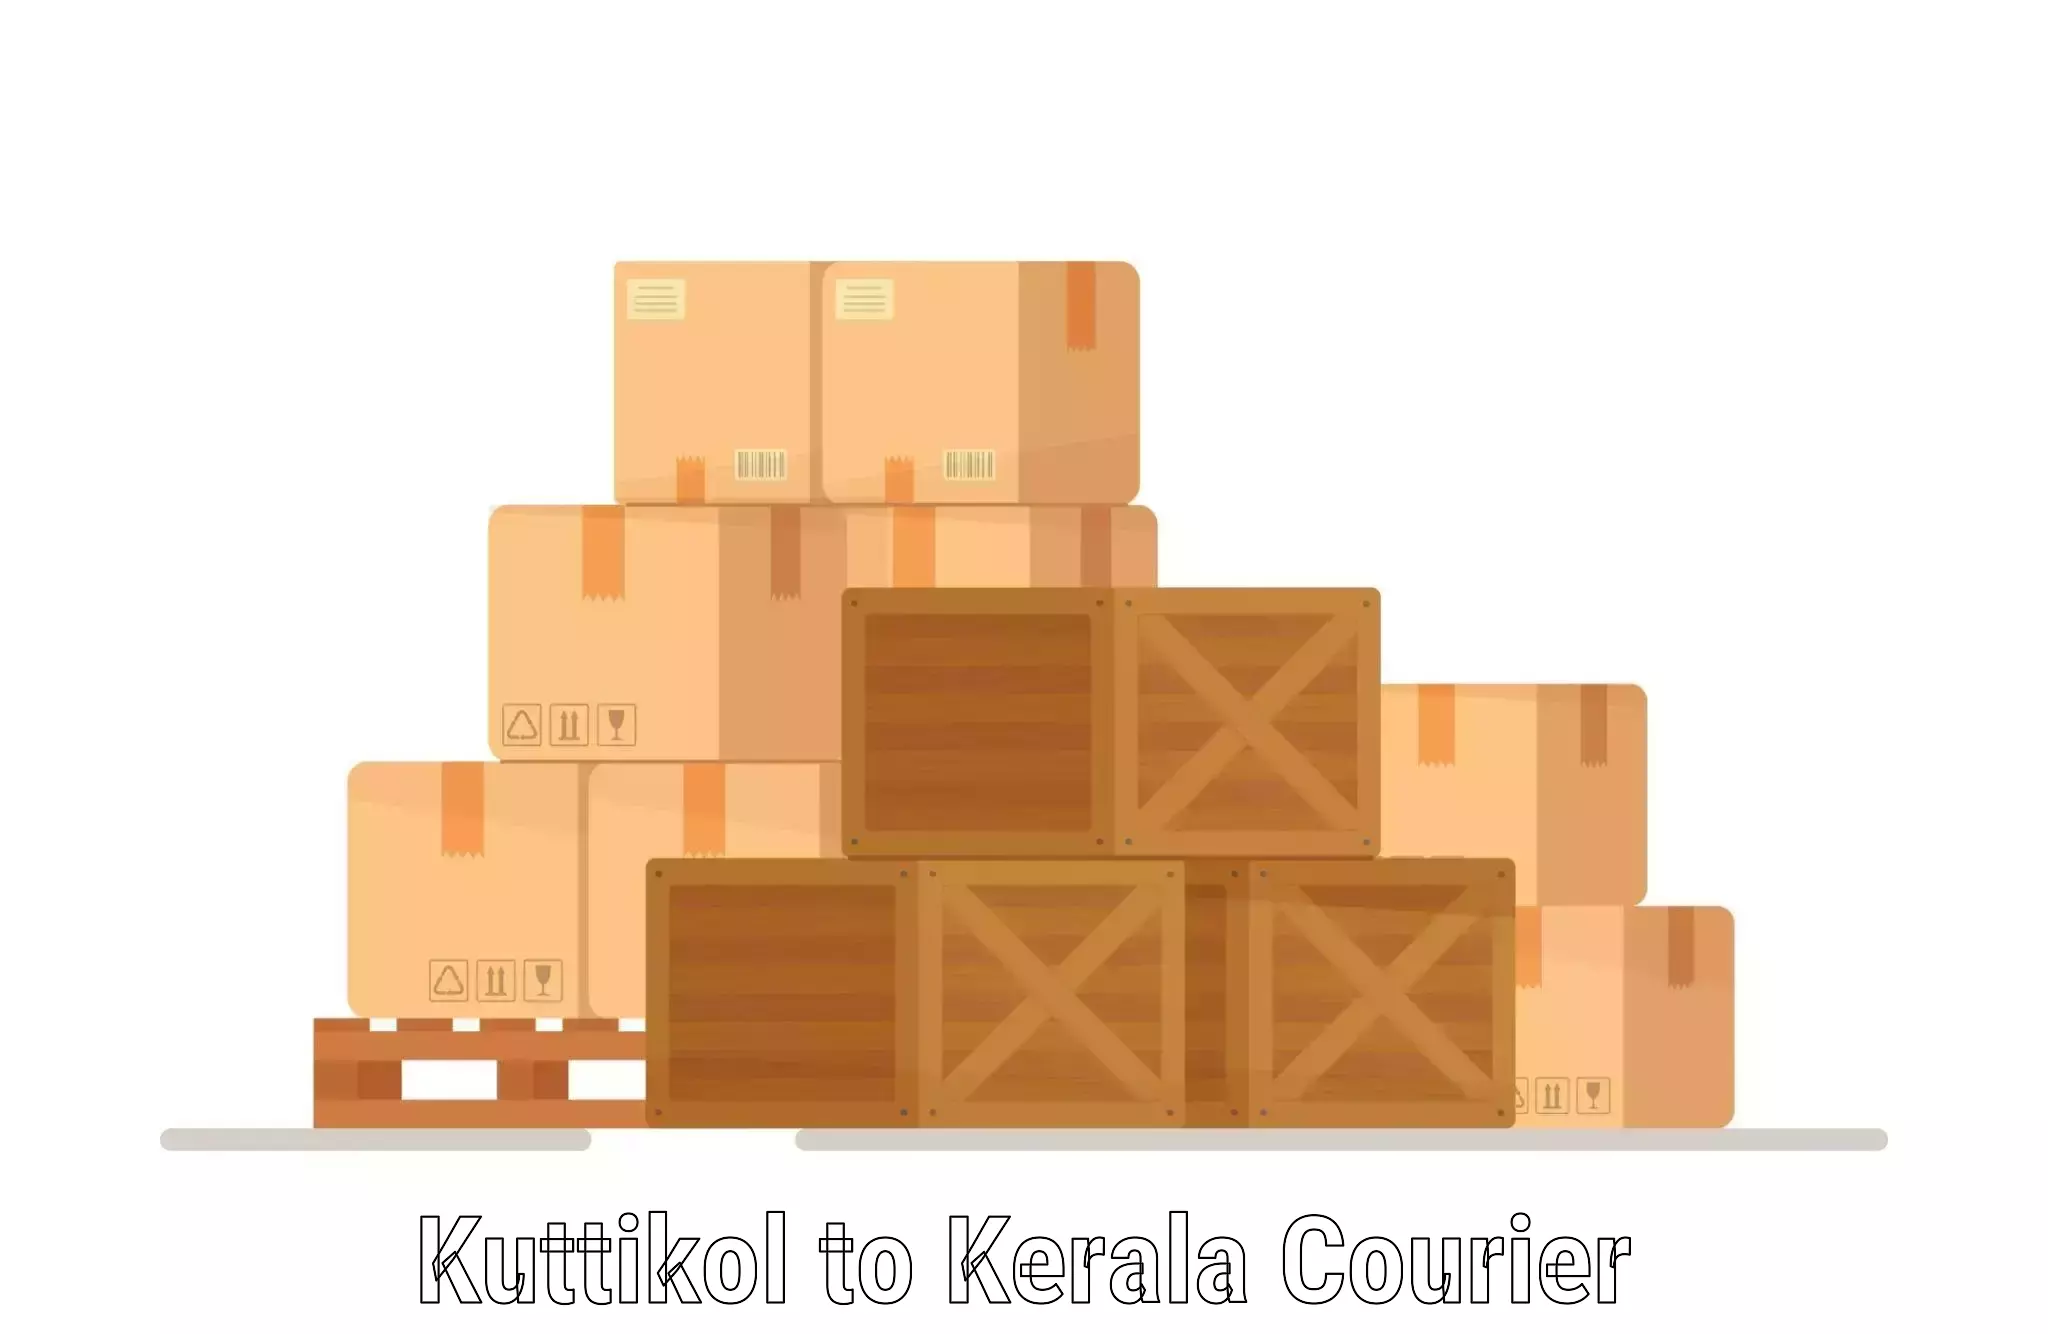 Nationwide courier service Kuttikol to Kakkayam